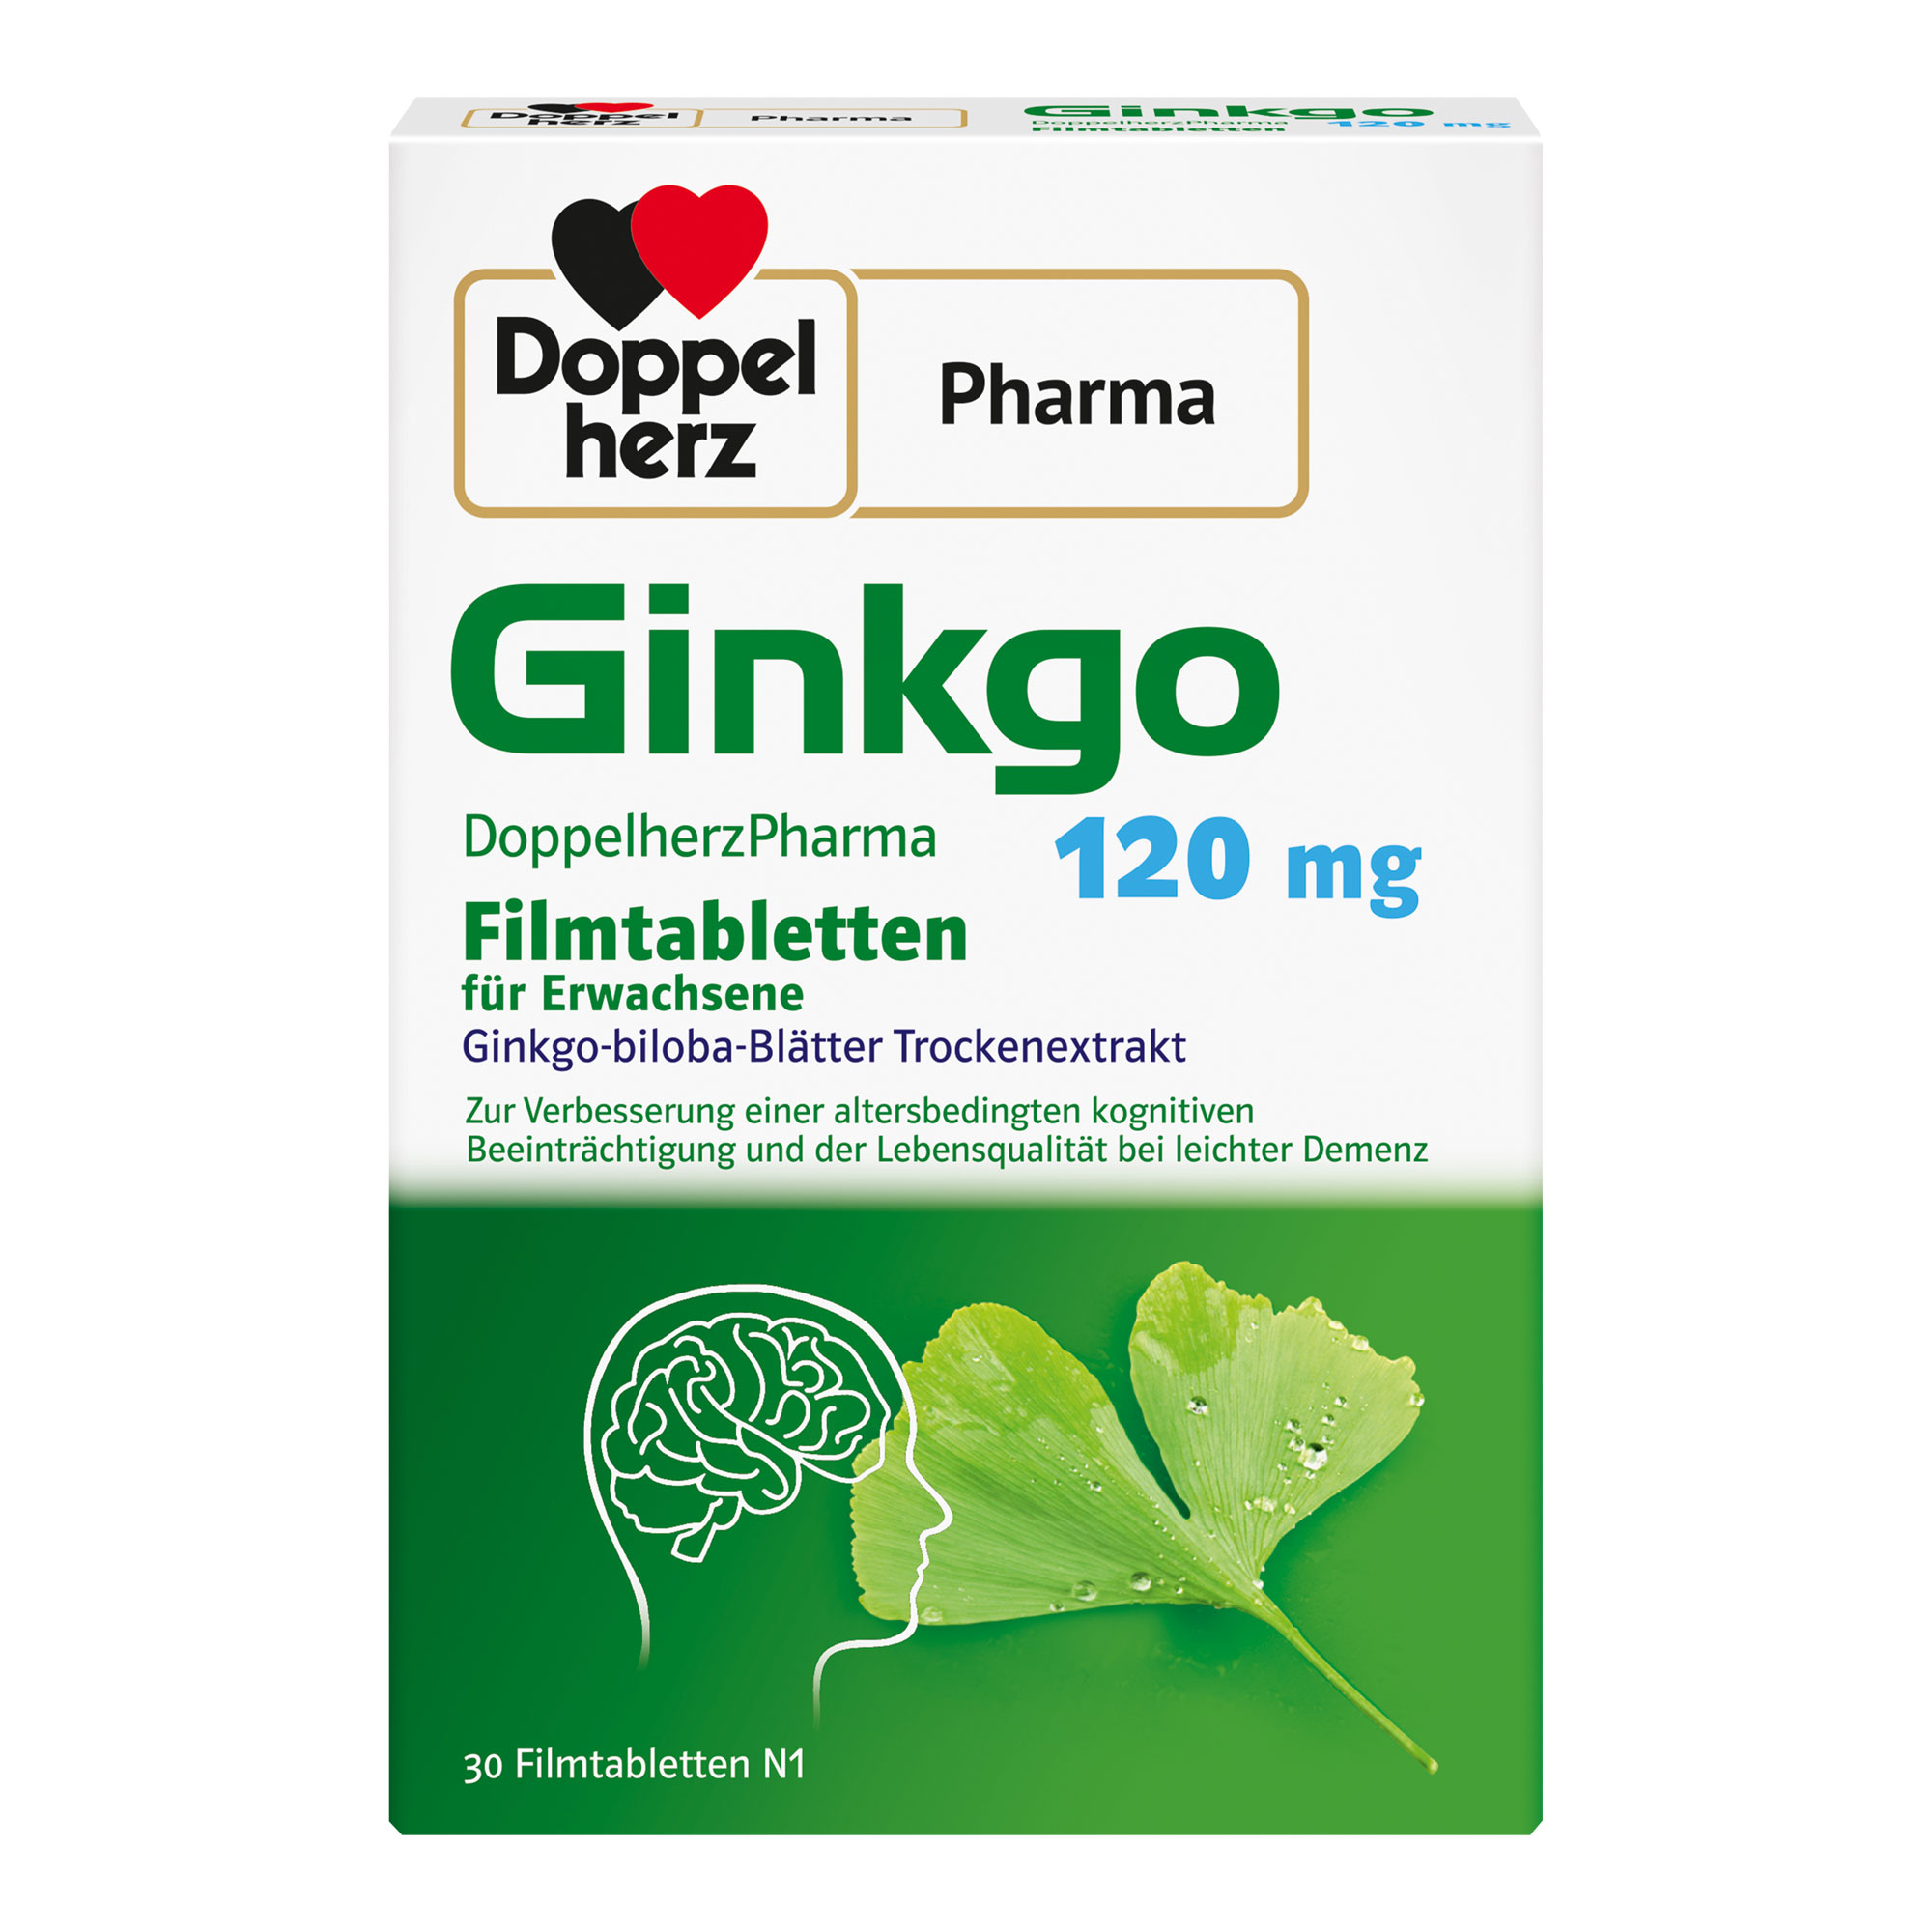 Pflanzliches Arzneimittel mit Ginkgo-biloba-Blätter Trockenextrakt. Zur Anwendung bei leichter Demenz und altersbedingter kognitiver Beeinträchtigung.